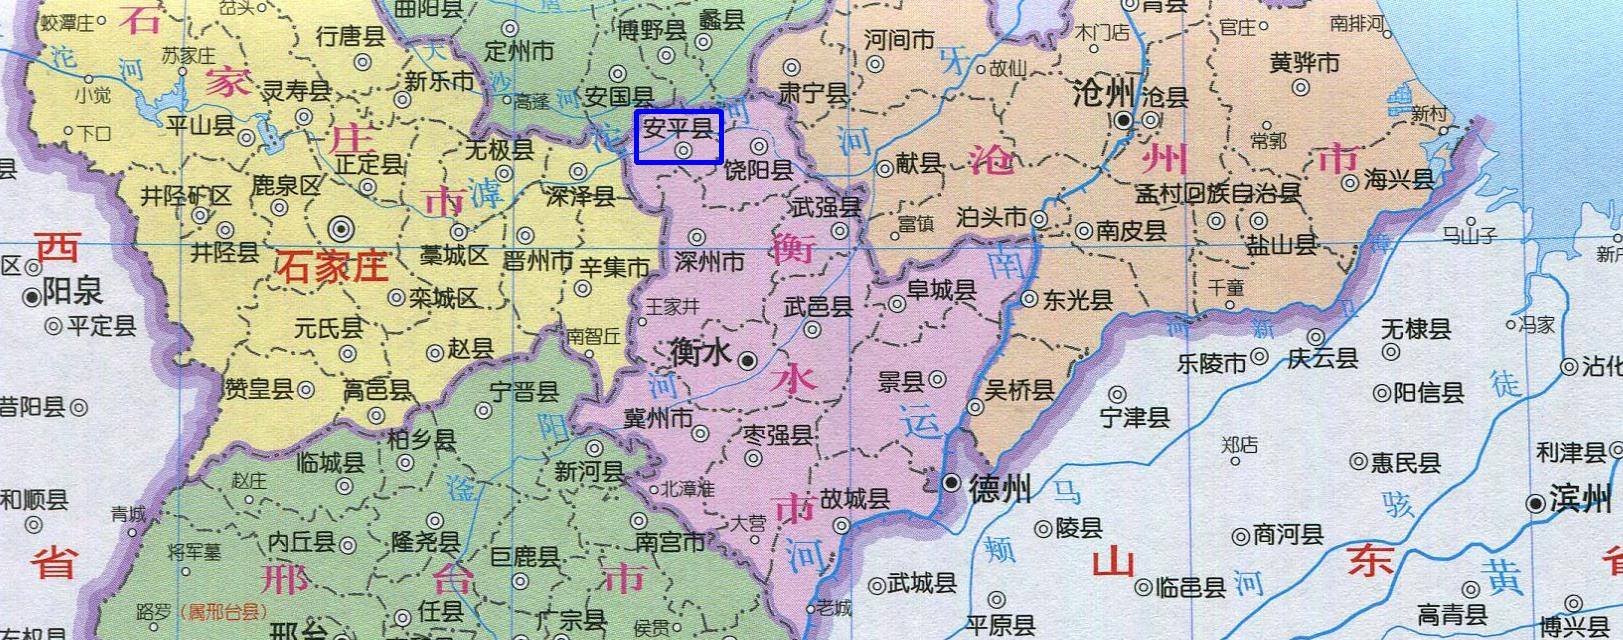 河北省衡水市安平县已经成为中国目前唯一的安平县,它在地图上的位置